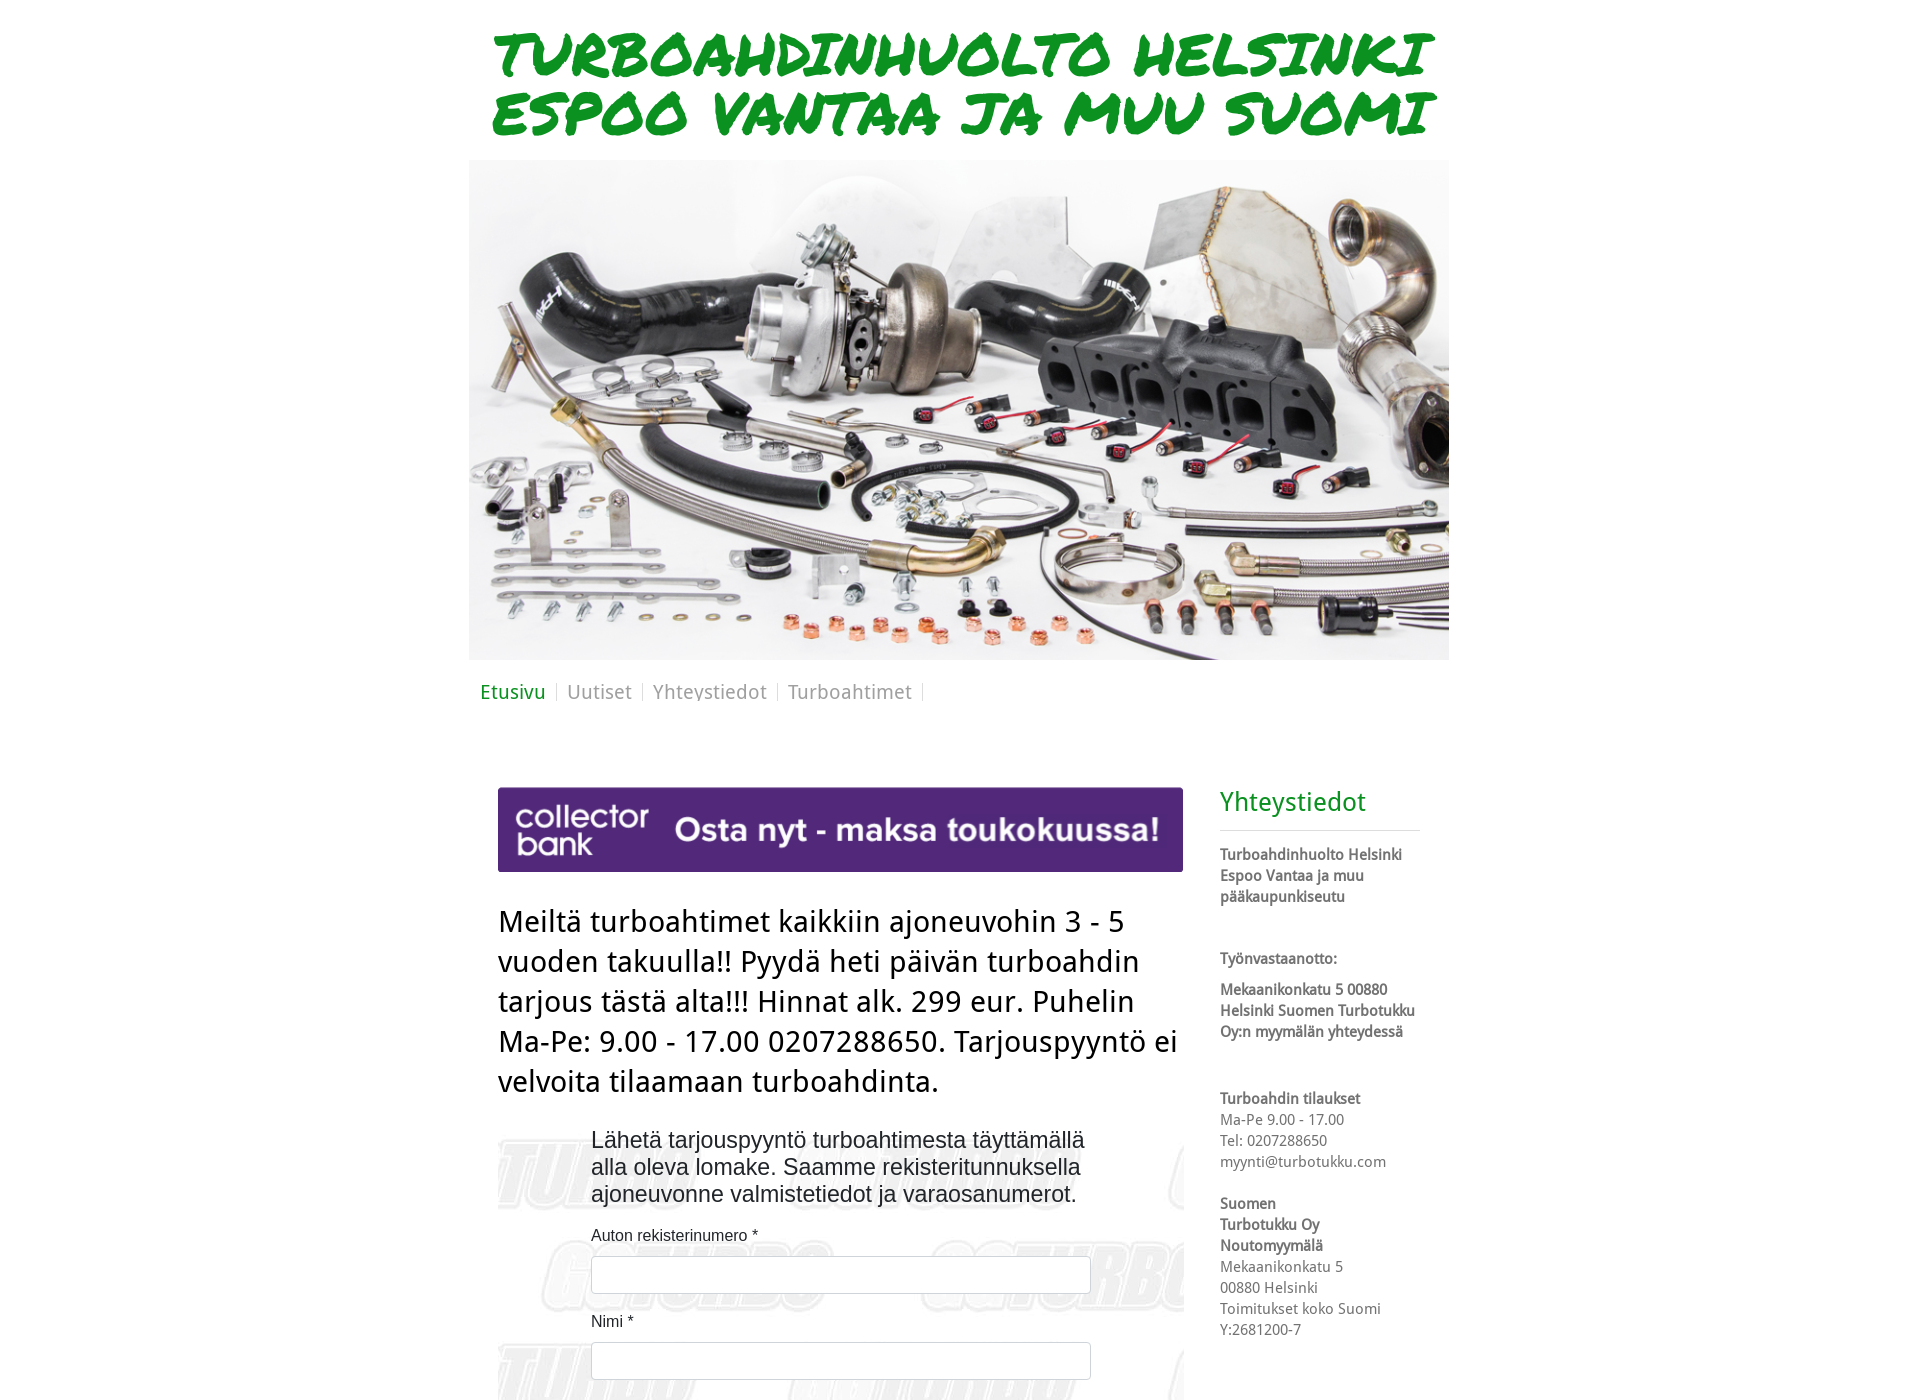 Näyttökuva turbohuoltoespoo.fi